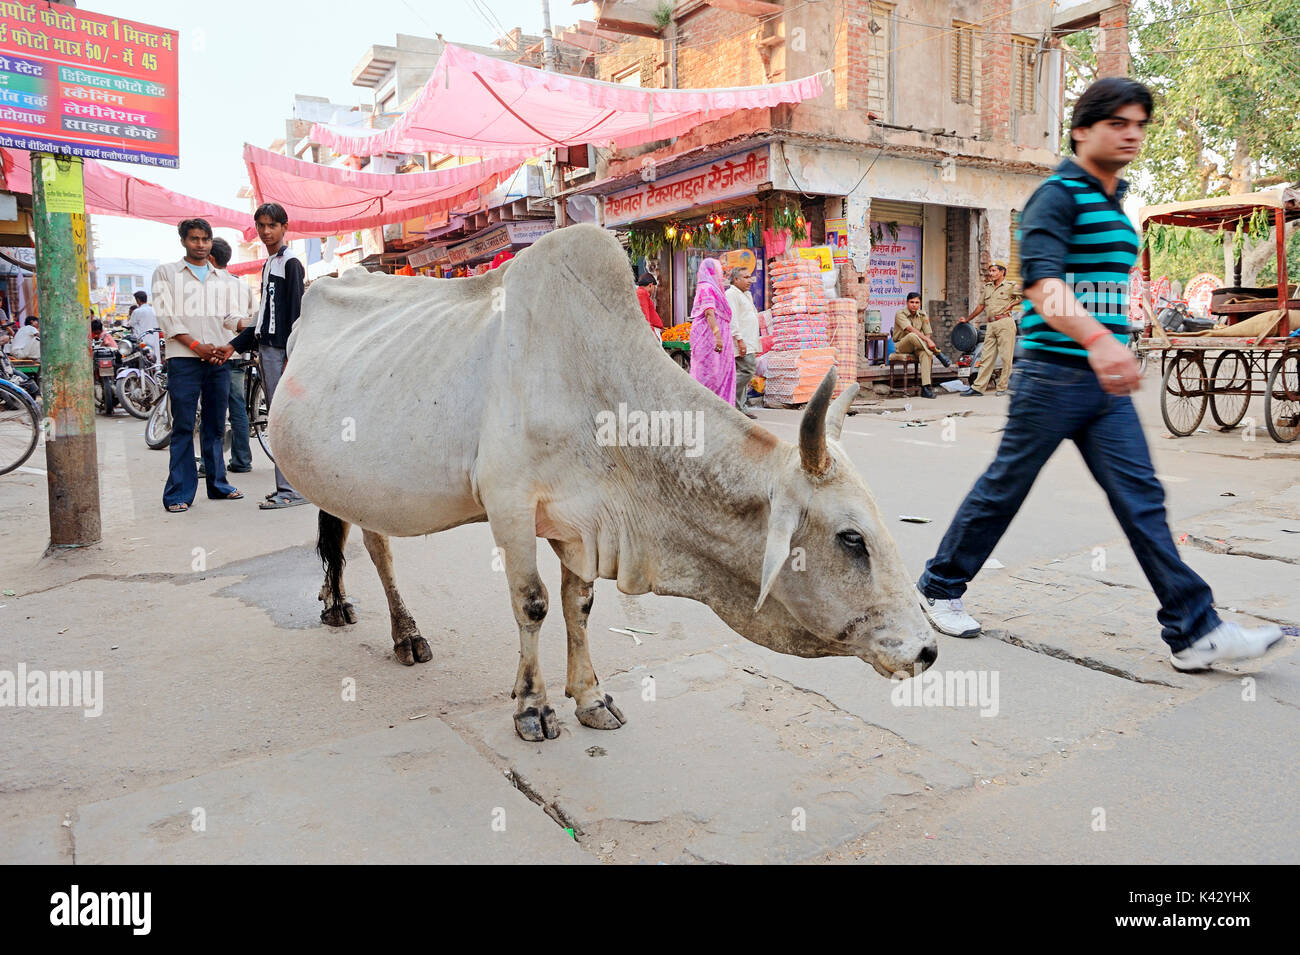 Shopping Straße und Vieh, Bharatpur, Rajasthan, Indien | Einkaufsstrasse und Hausrind, Bharatpur, Rajasthan, Indien Stockfoto